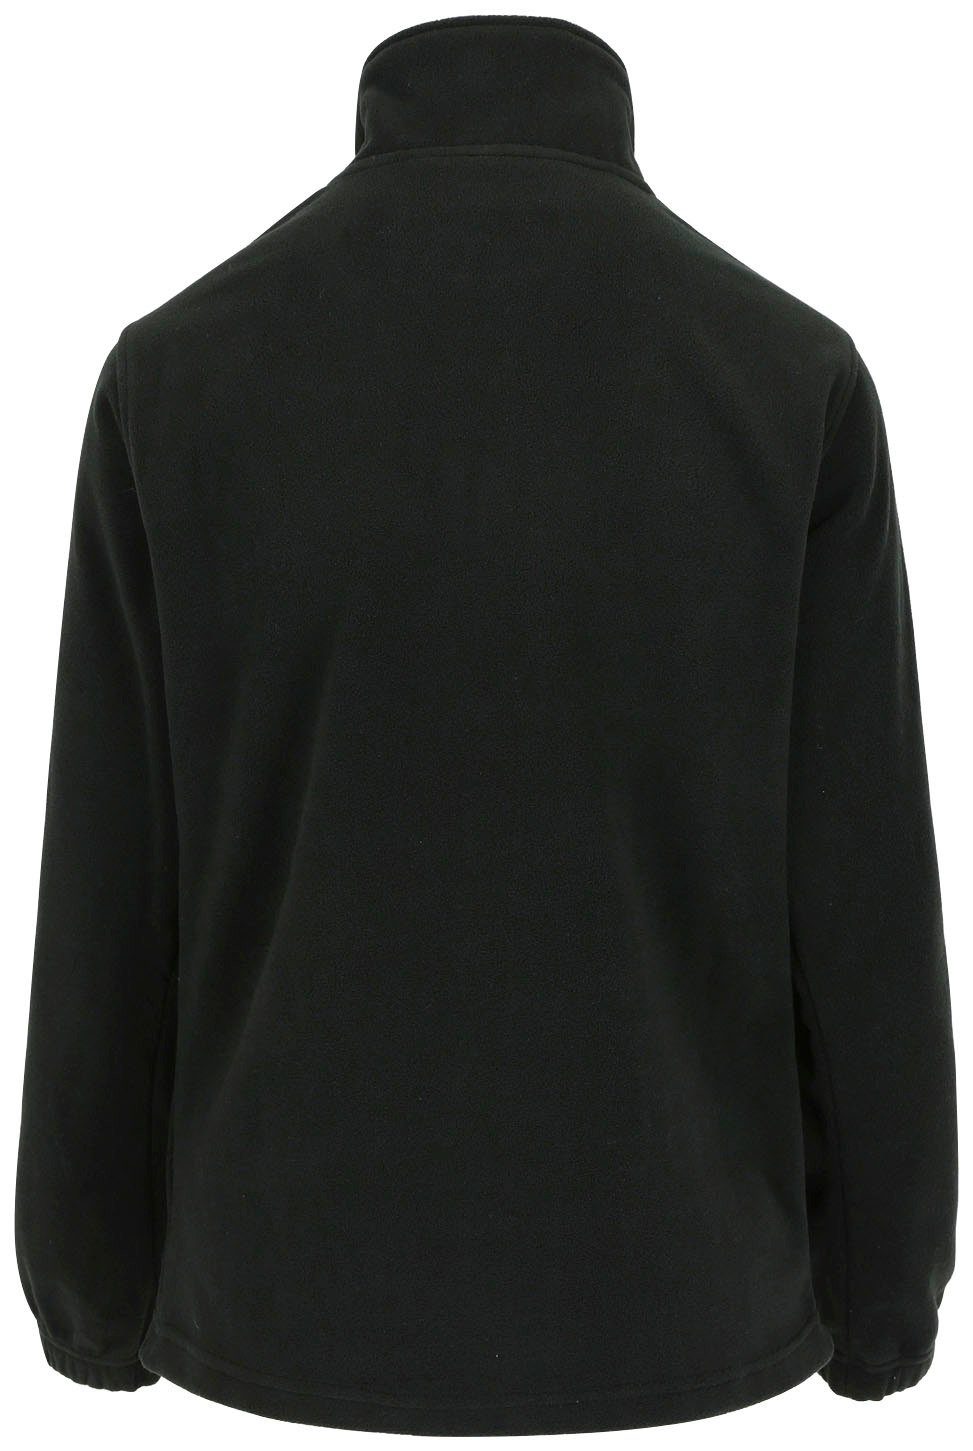 Bündchen Herock Damenfleecepullover und schwarz Reißverschluss mit Aurora-Demen Stehkragenpullover elastichem Fleece-Sweater kurzem